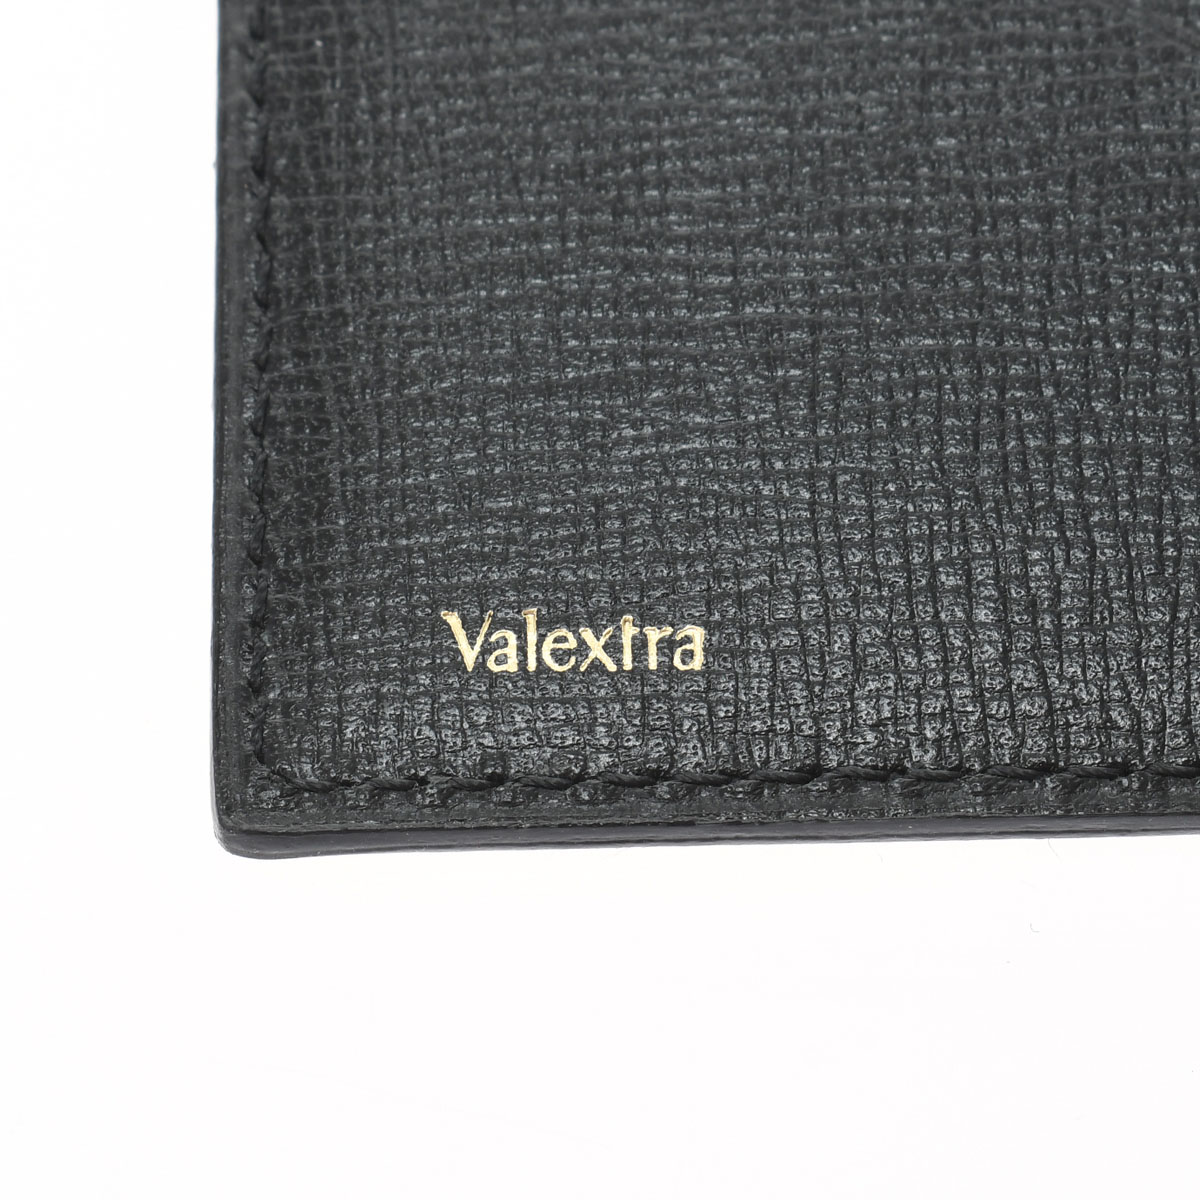 ヴァレクストラ 2つ折り札入れ ブラック エンボスレザー メンズ 財布 【中古】【purse】